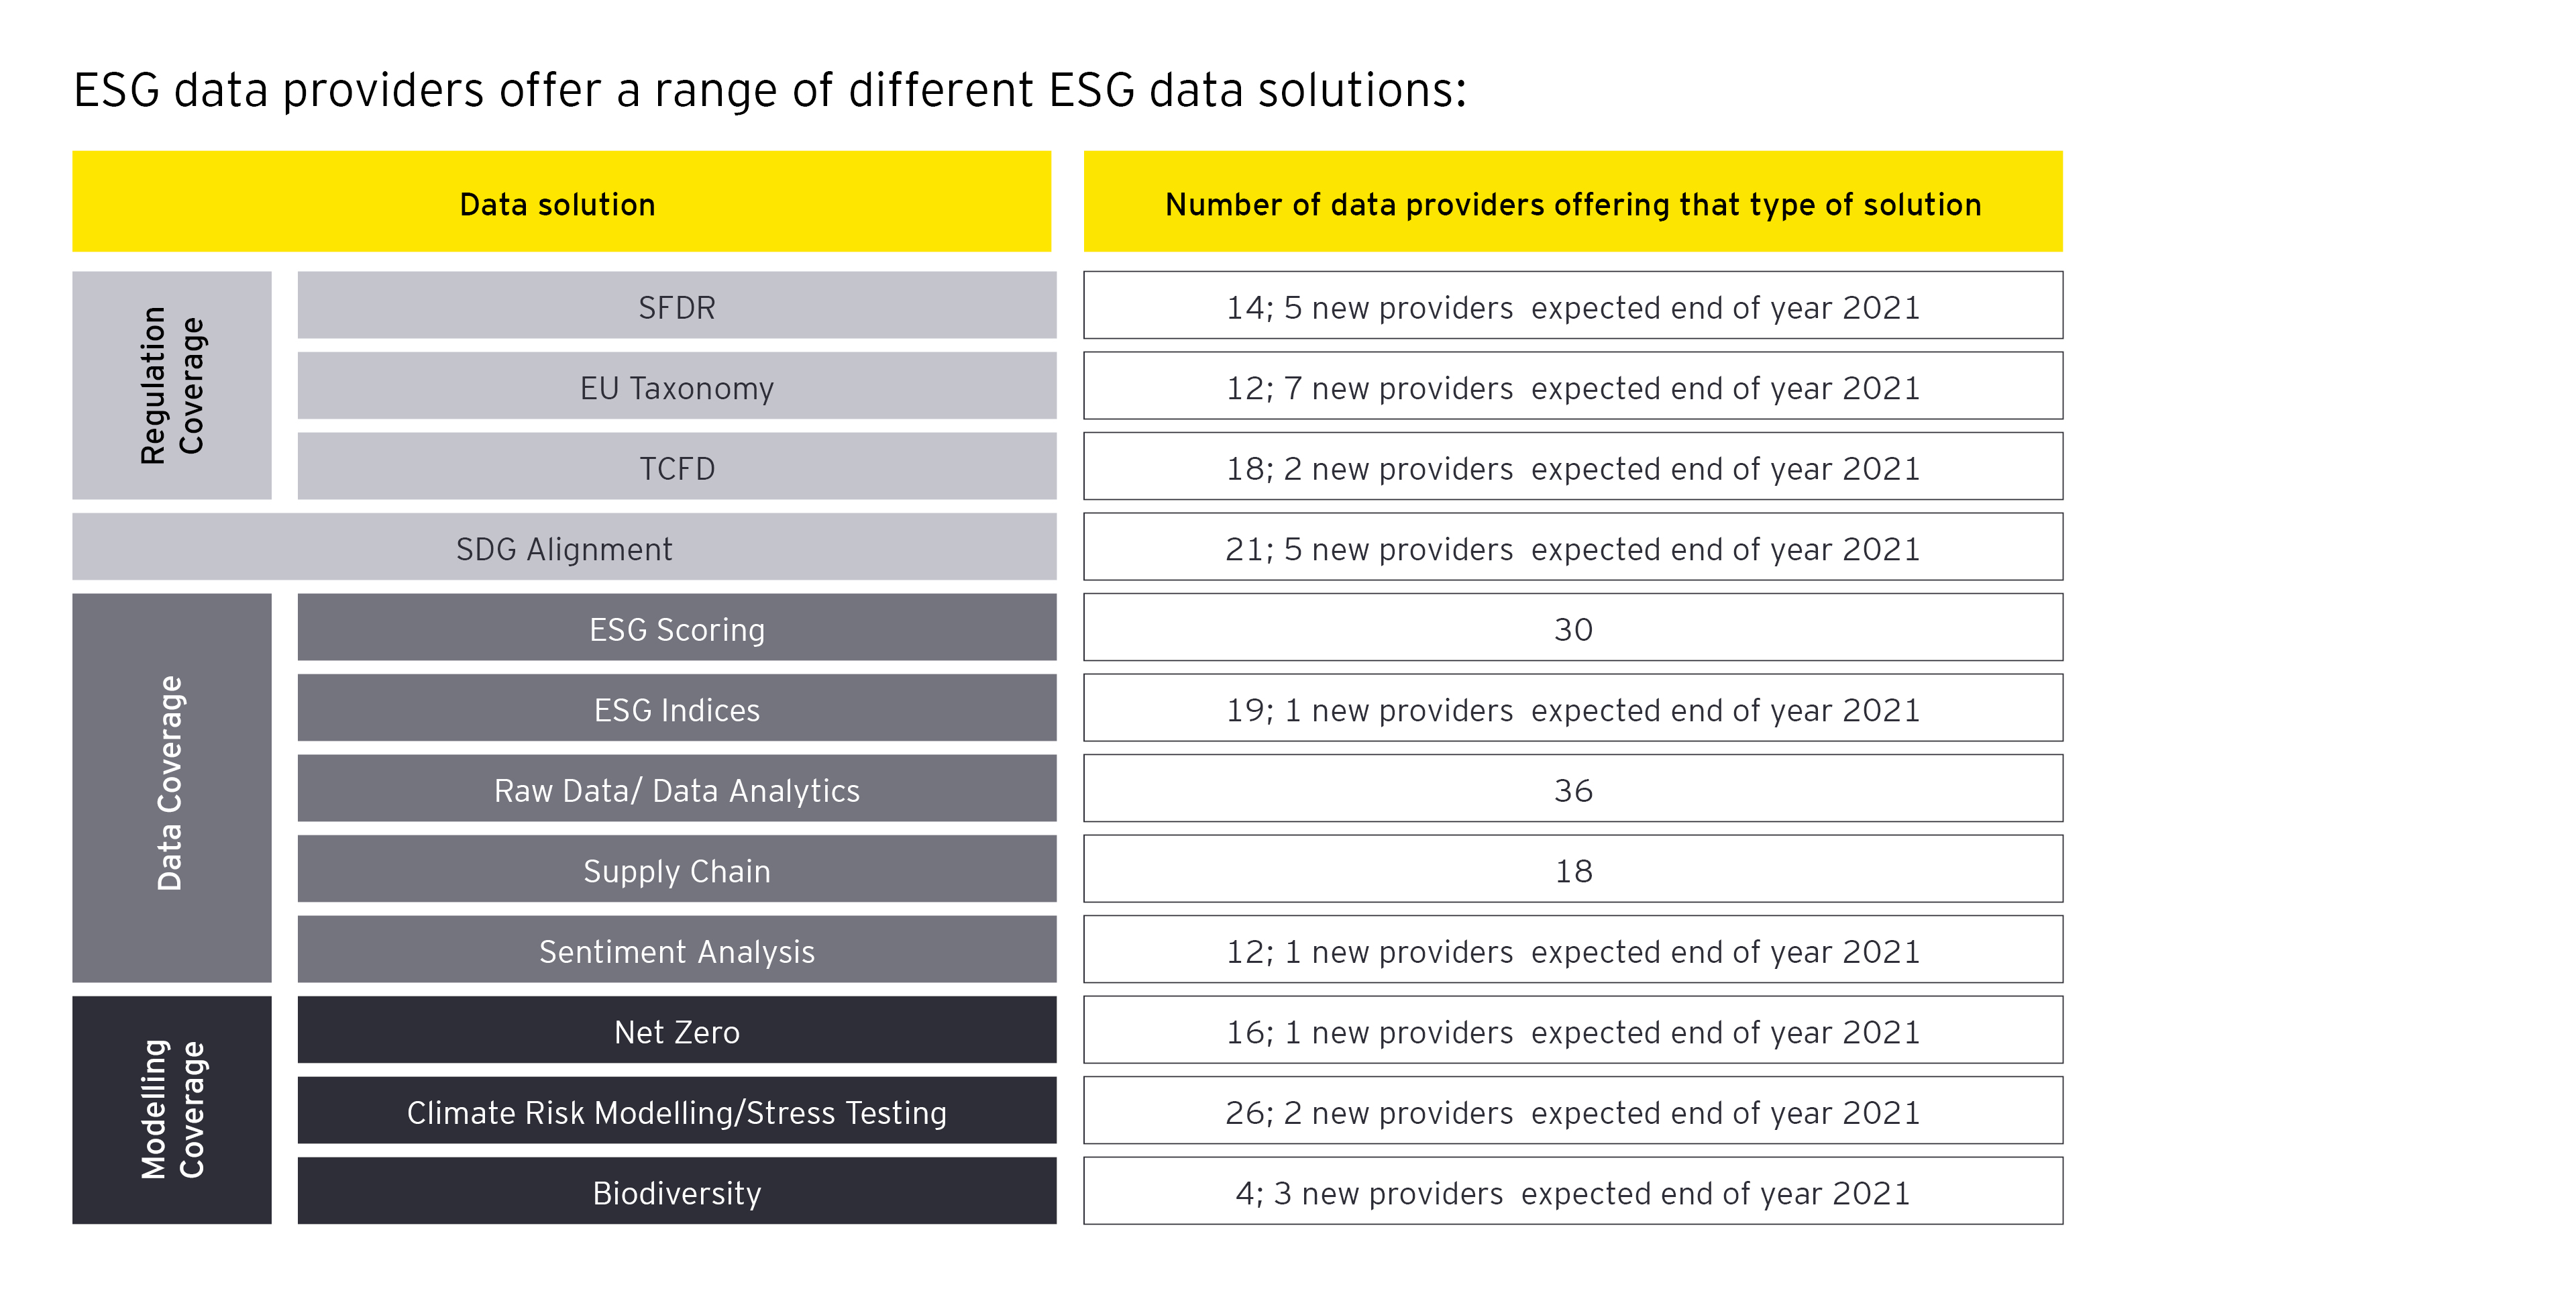 ESG data providers offer a range of different ESG data solutions